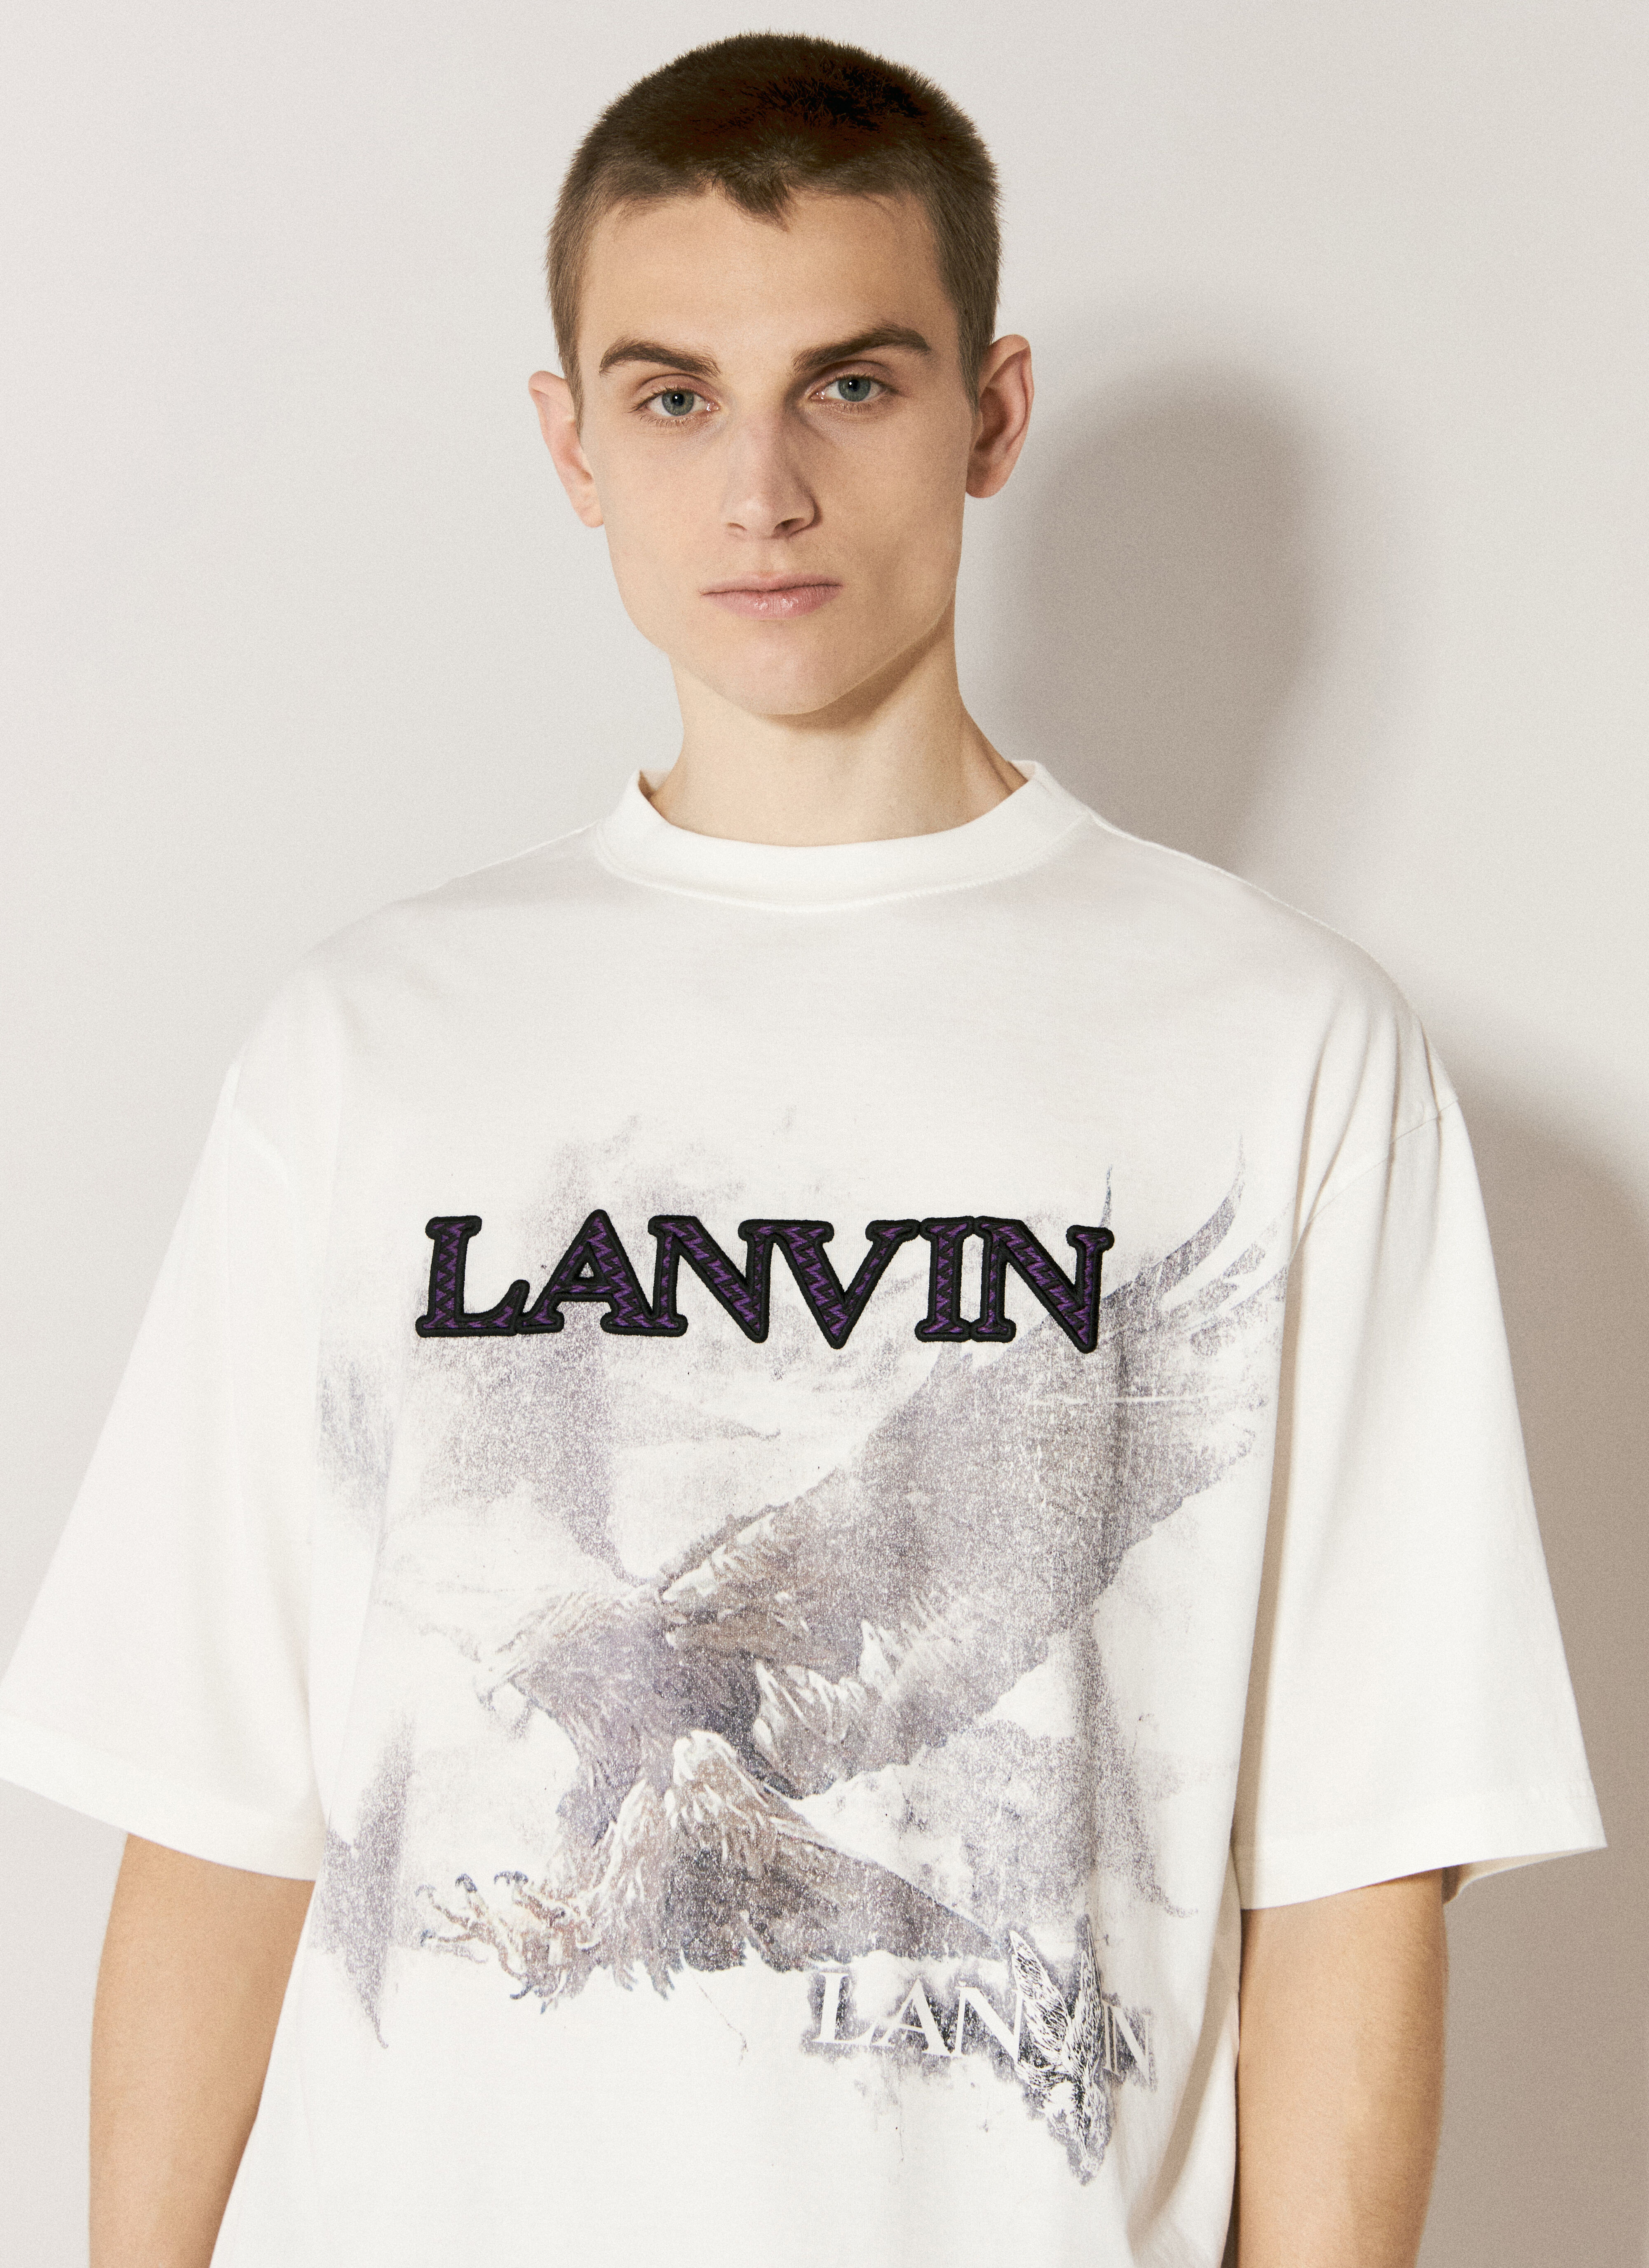 Lanvin 徽标印花 T 恤  白色 lnv0156001